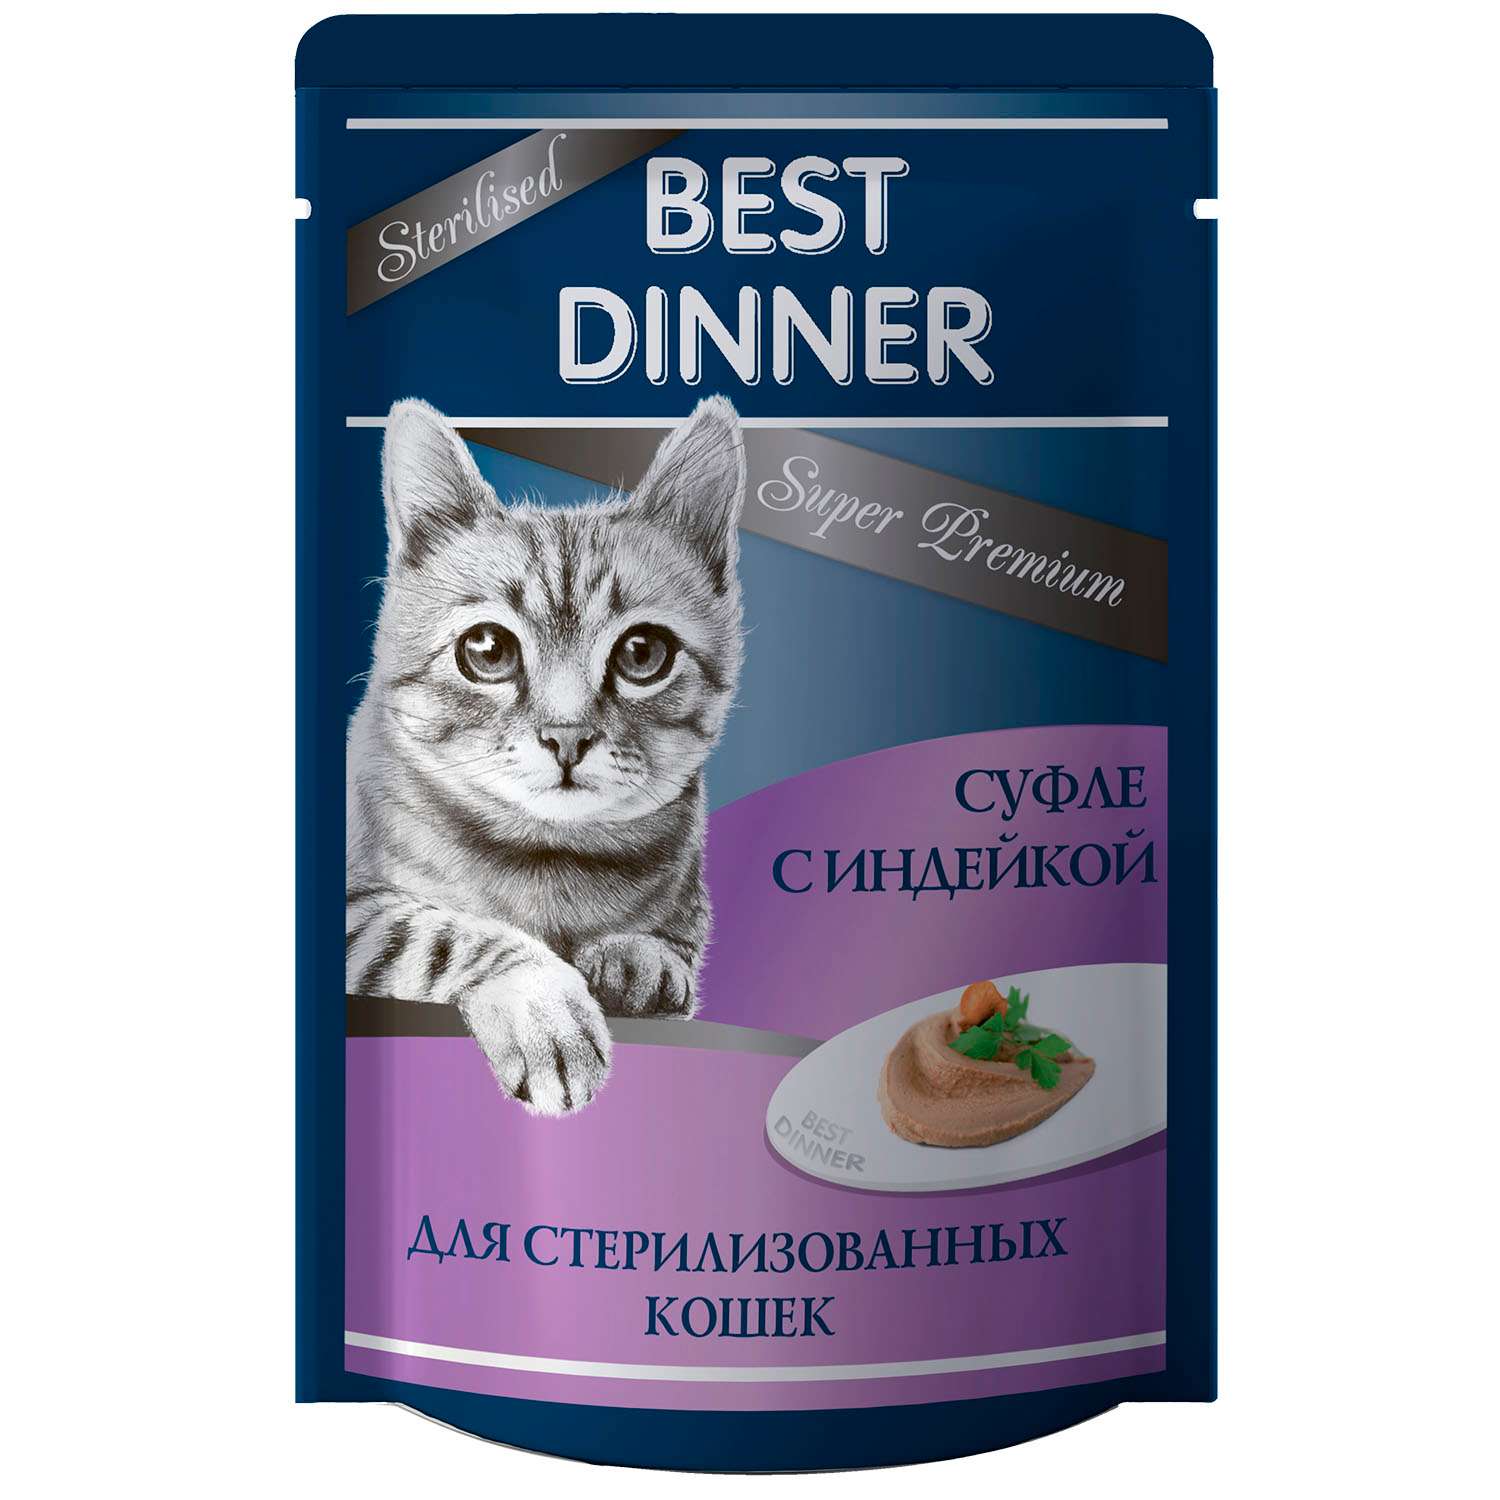 Корм Best Dinner 85г для стерилизованных кошек Суфле с индейкой - фото 1